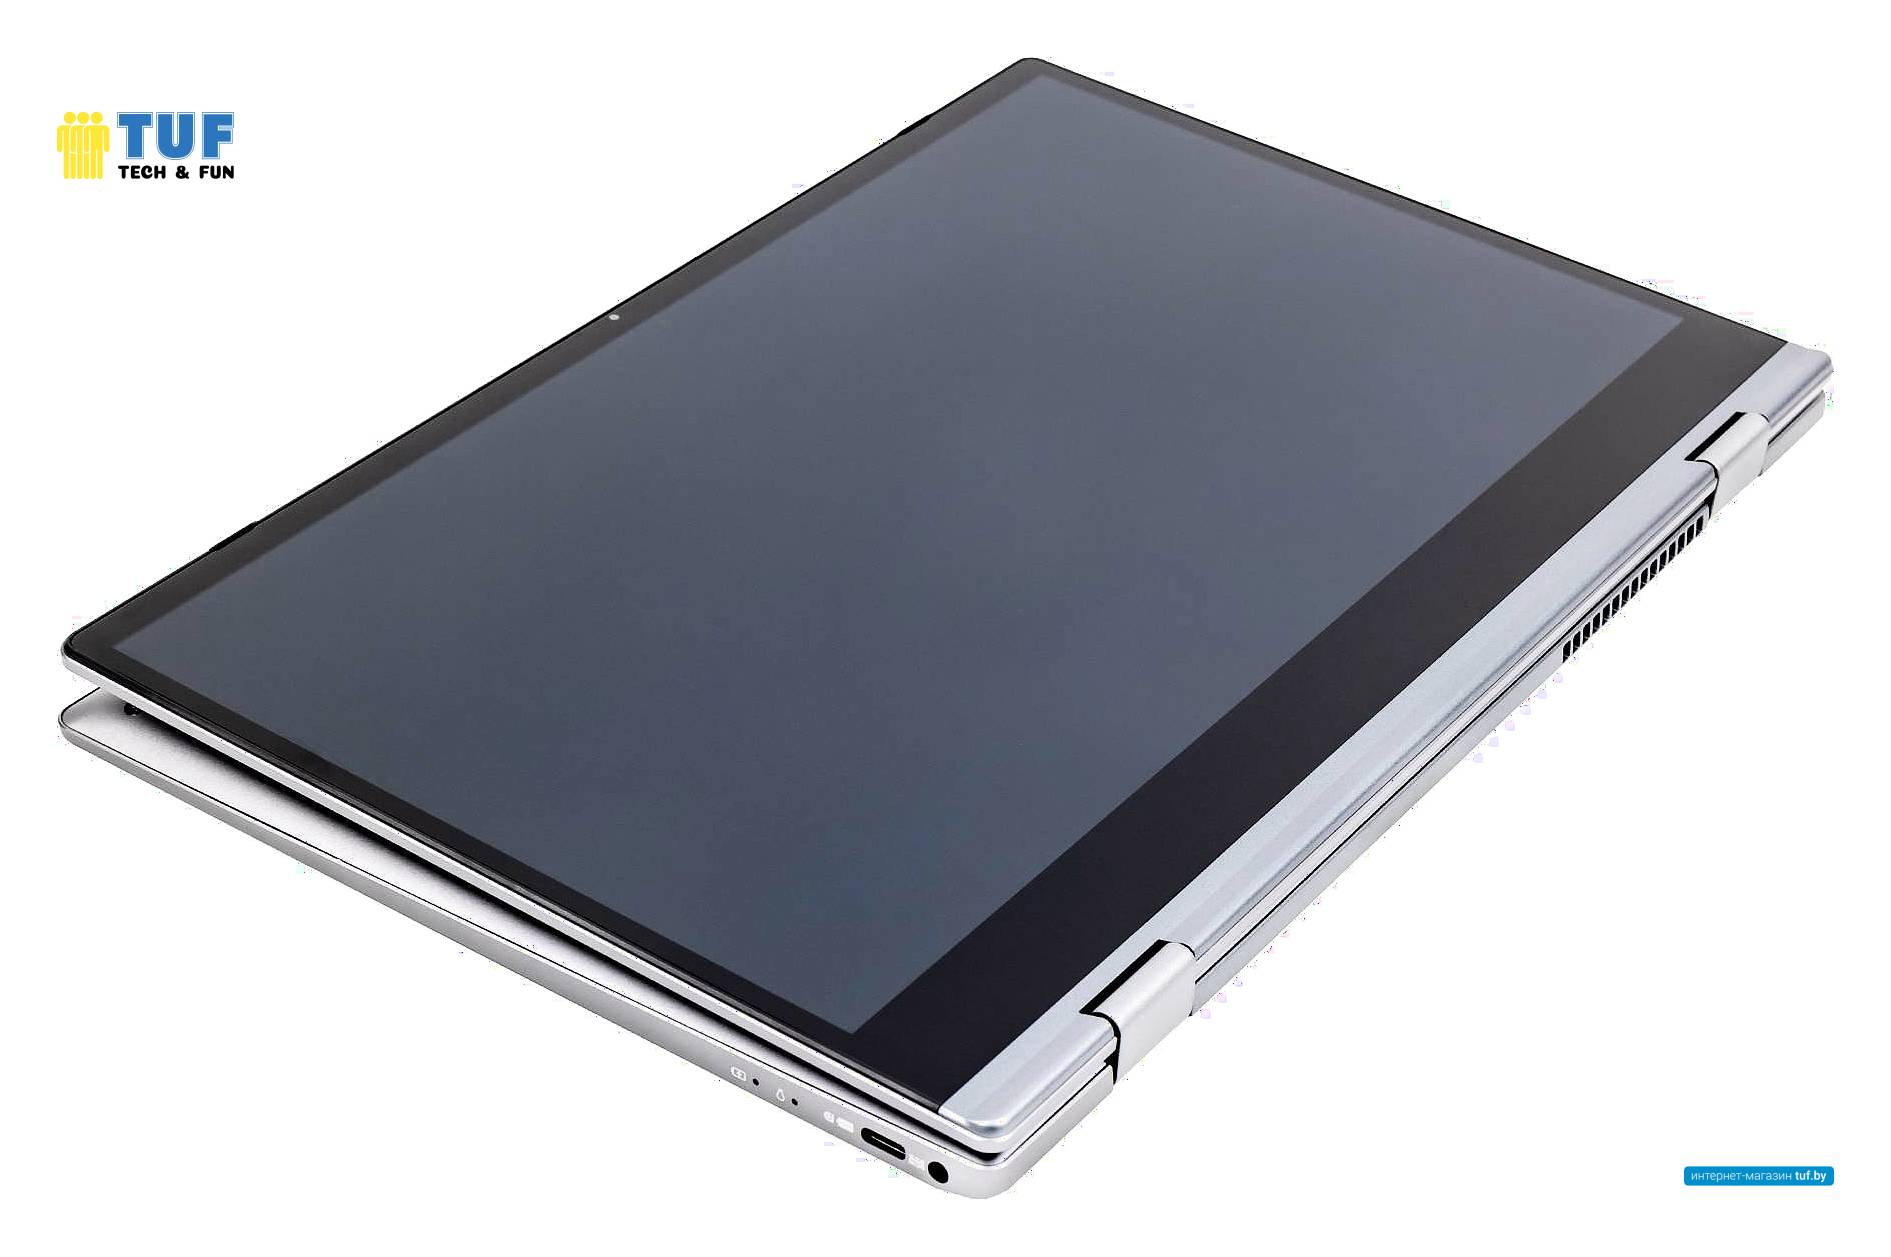 Ноутбук Hiper Slim H1306O5165HM